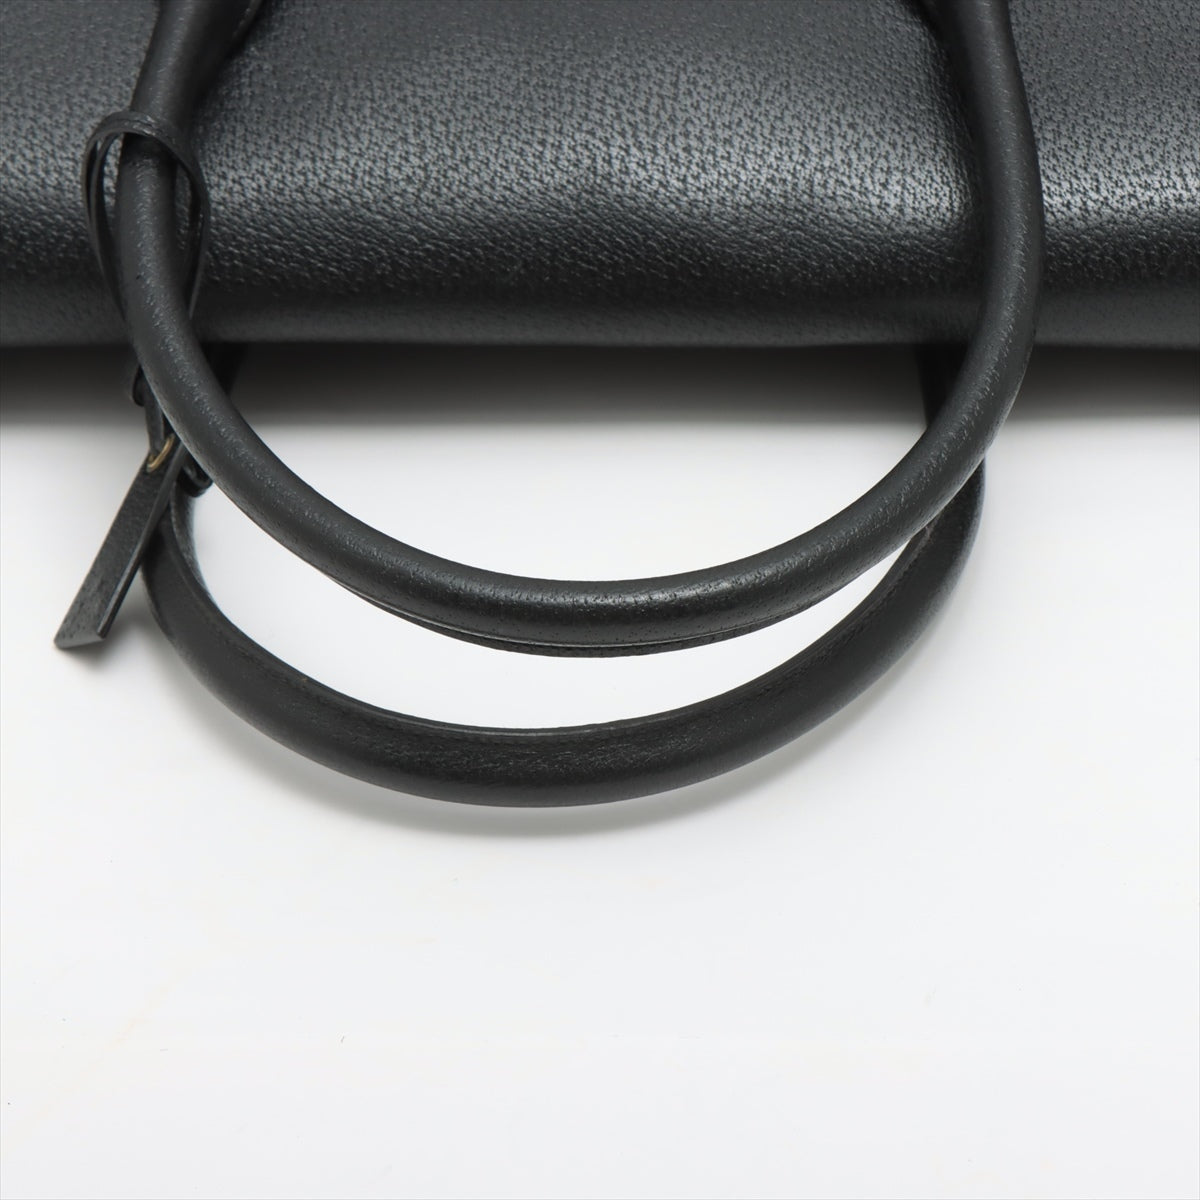 Gucci Guccissima Canvas & leather Hand bag Black 115531